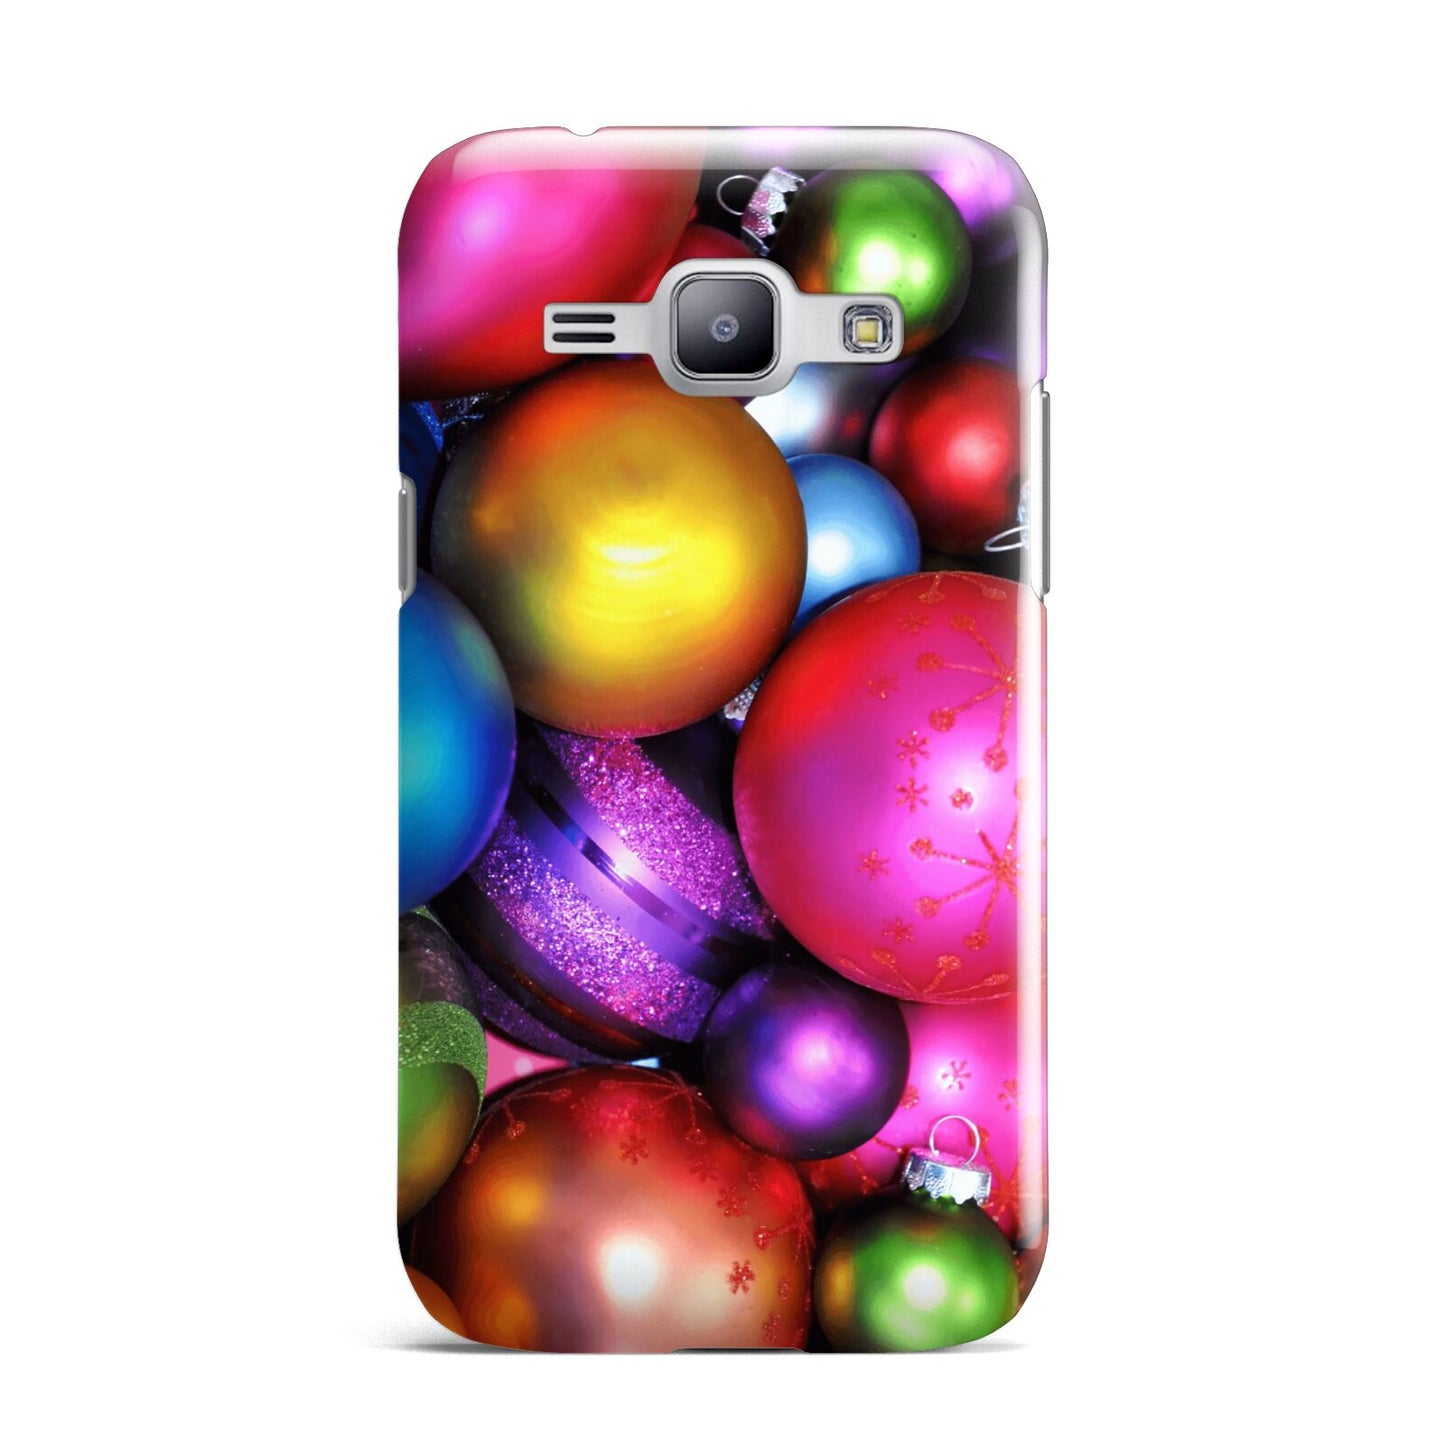 Bauble Samsung Galaxy J1 2015 Case